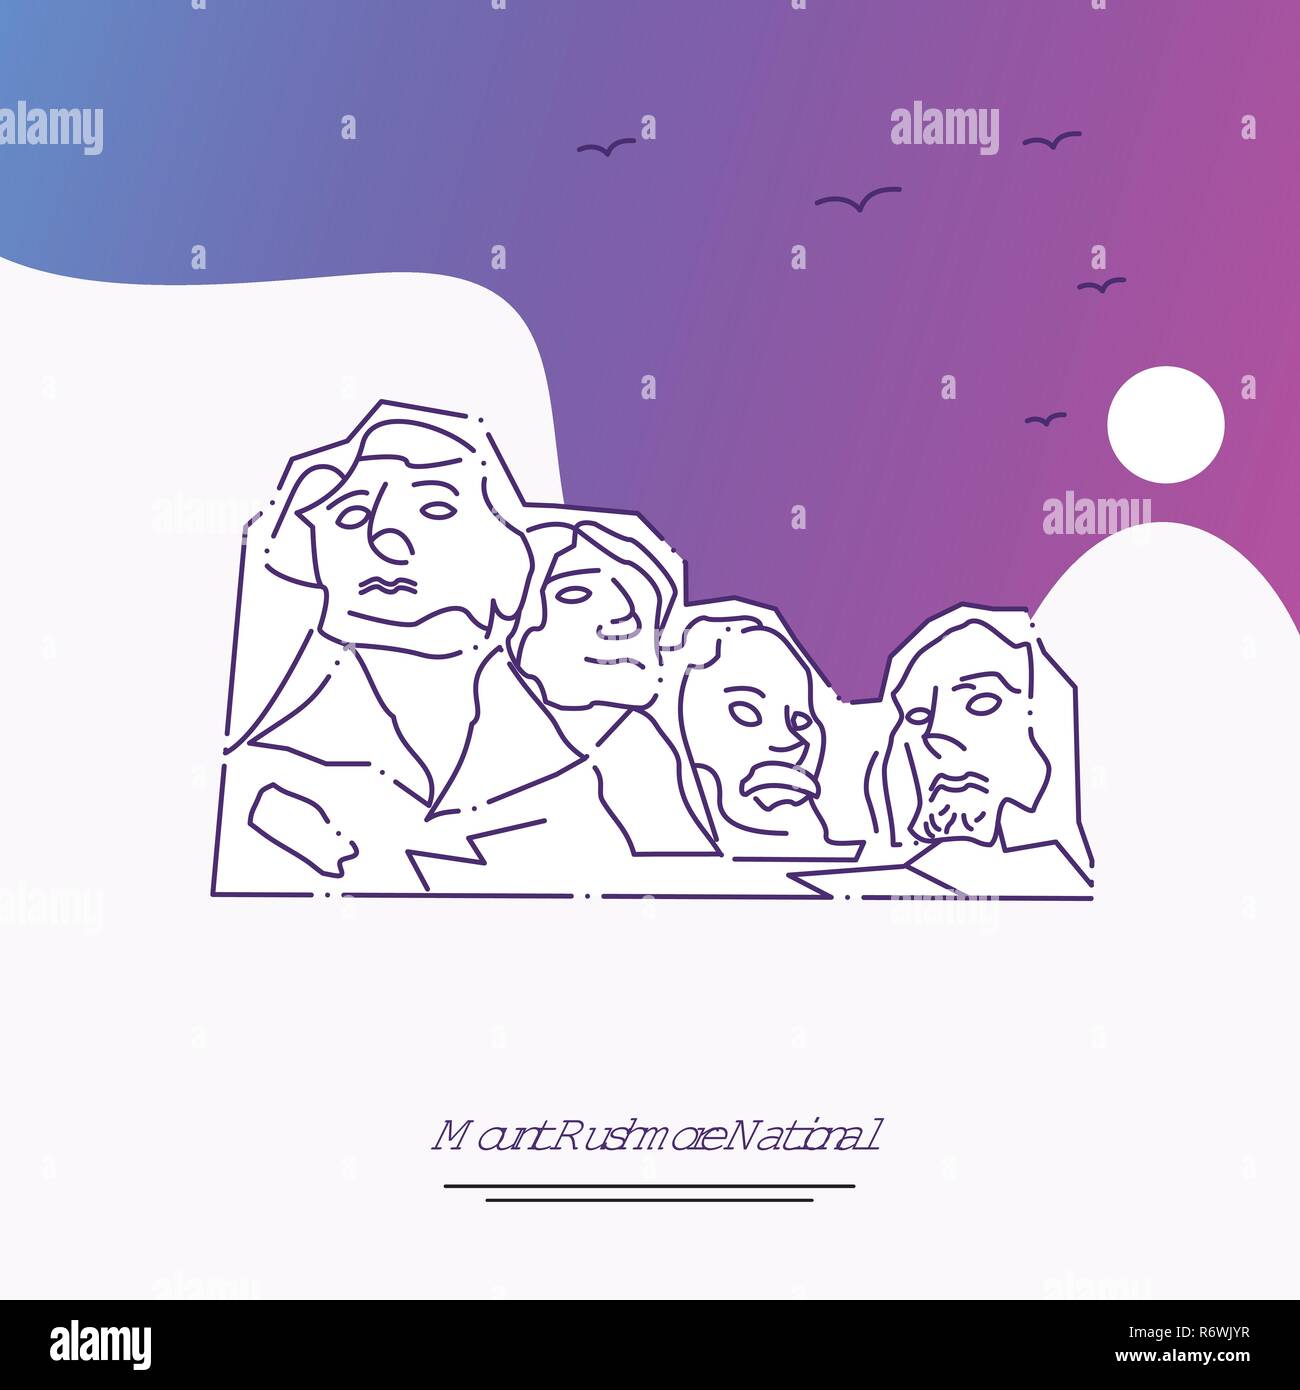 Billet MOUNT RUSHMORE NATIONAL Modèle d'affiche. Arrière-plan créatif violet Illustration de Vecteur